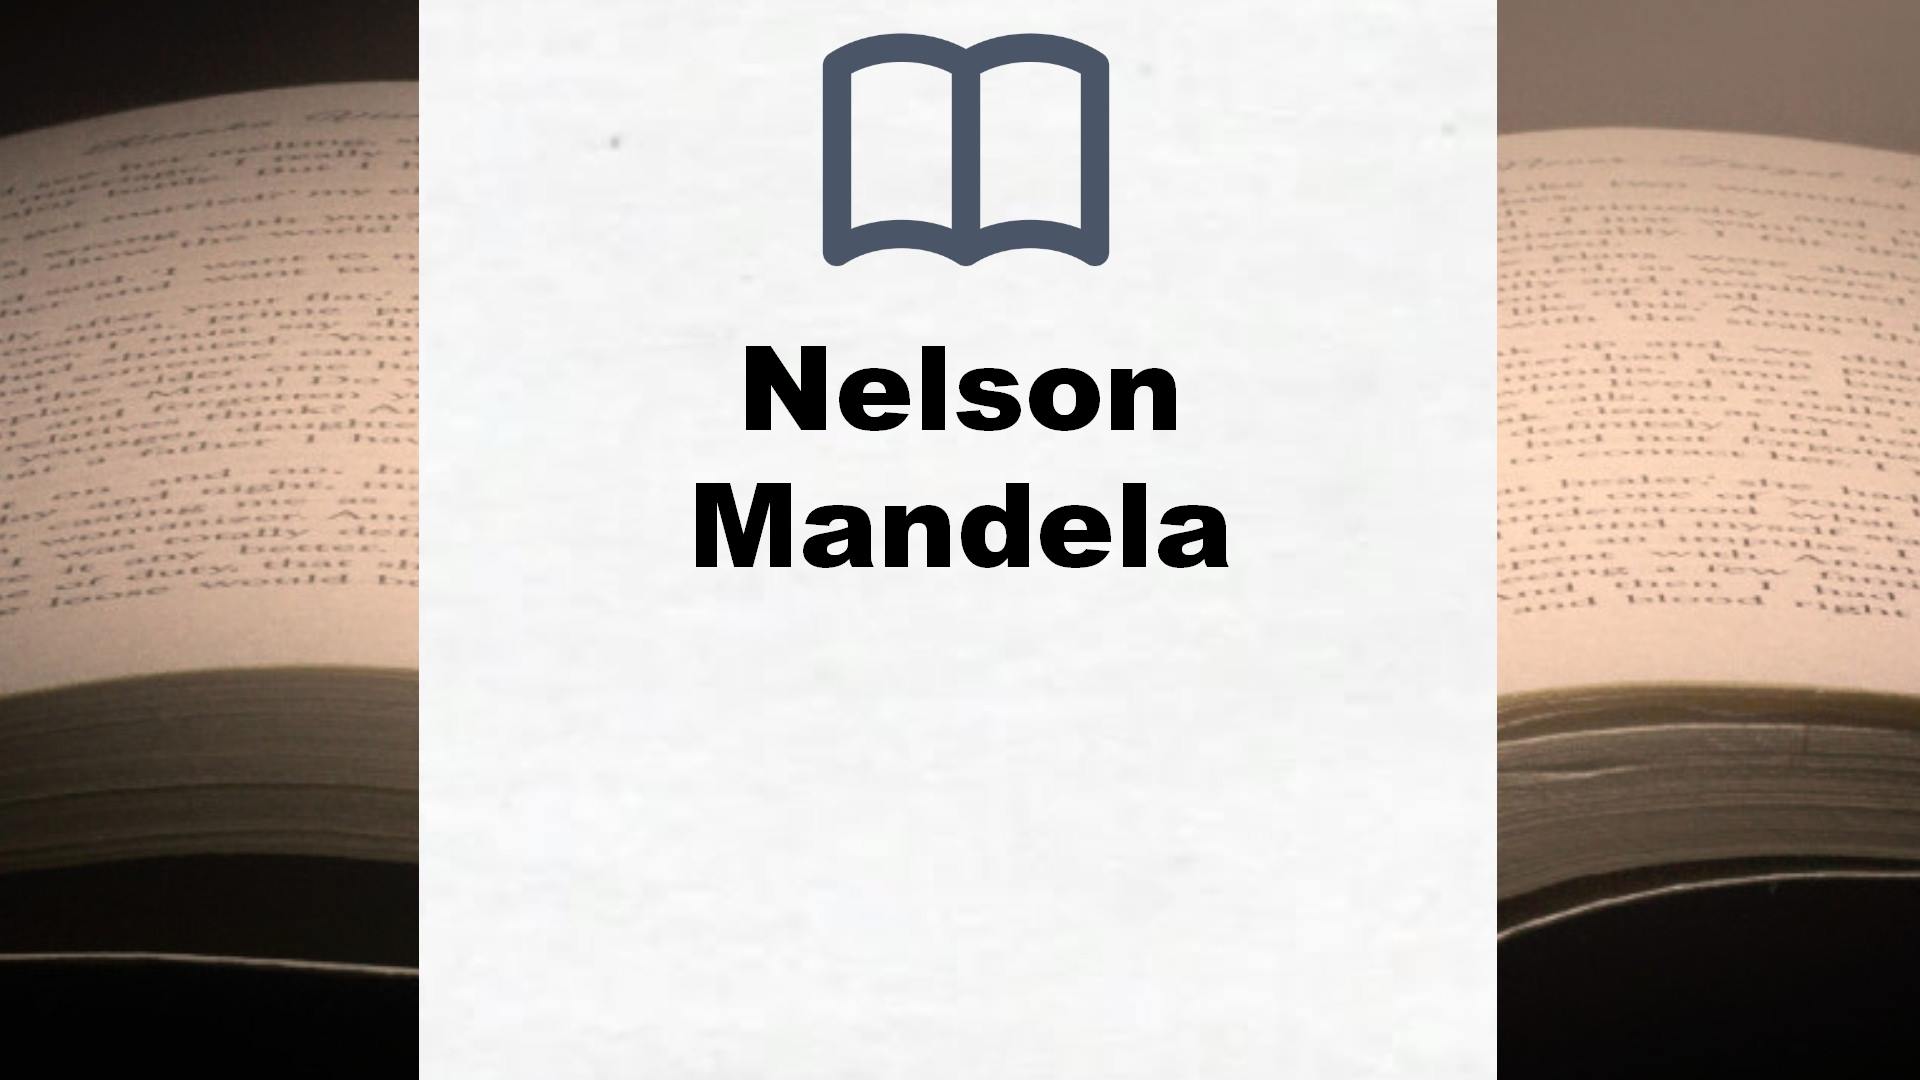 Bücher über Nelson Mandela